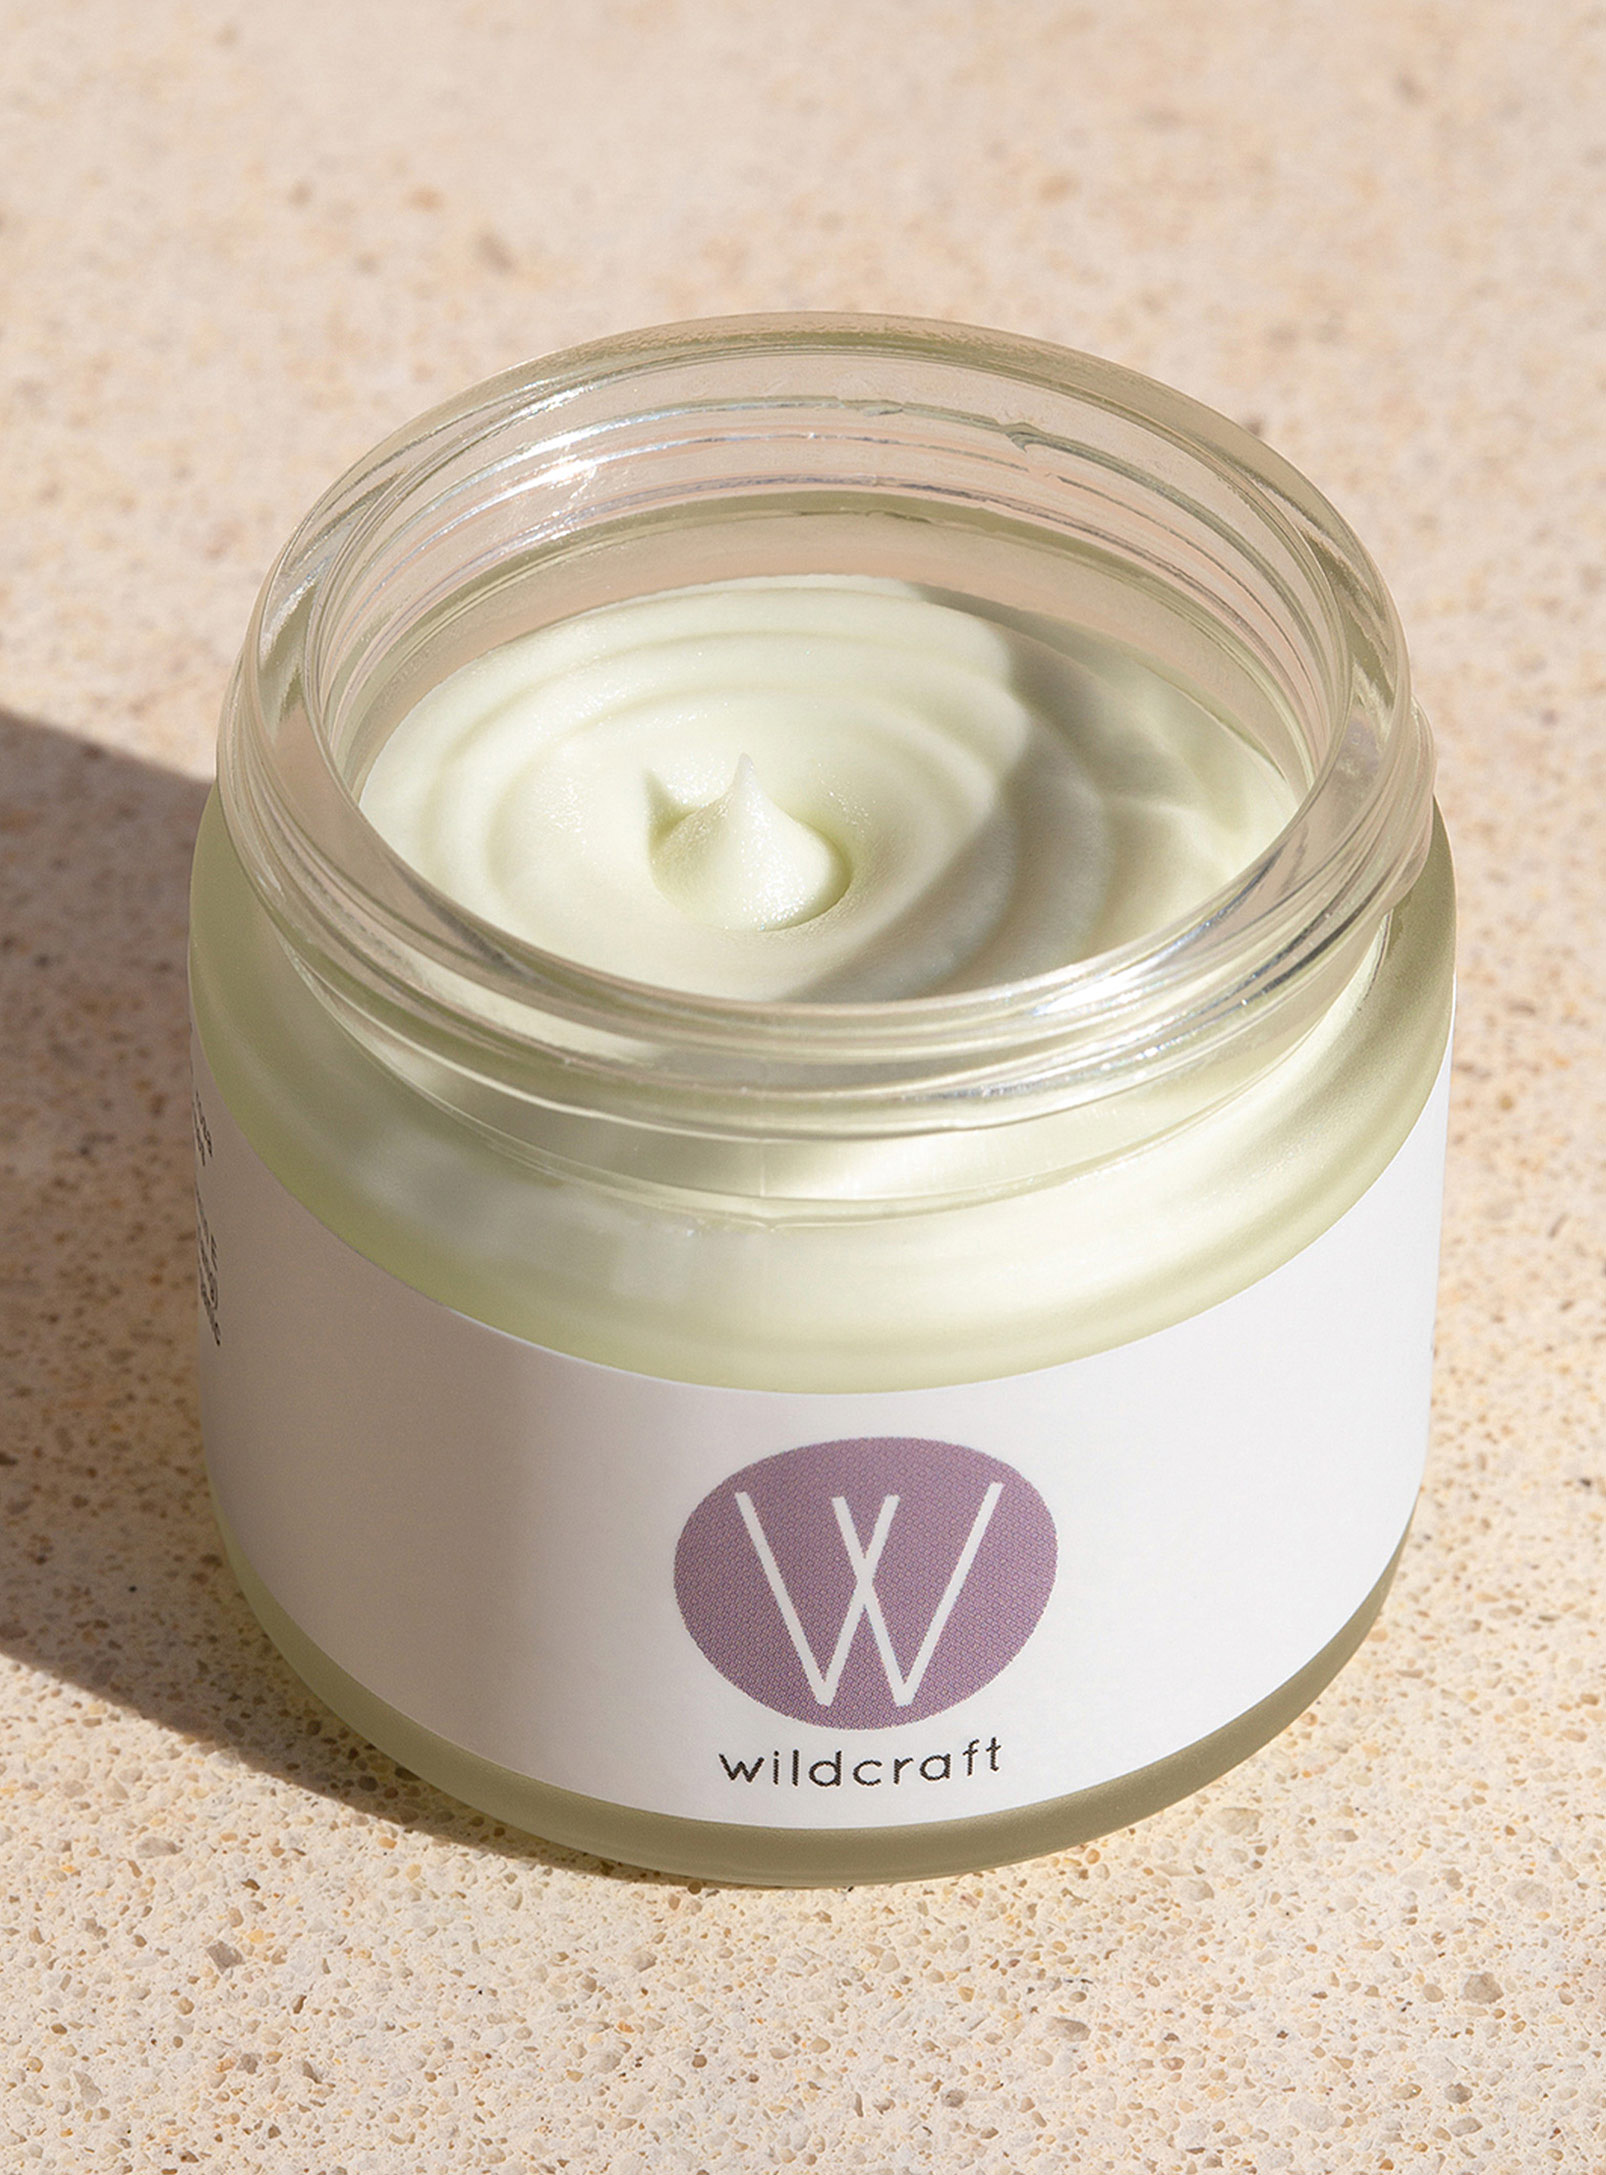 Wildcraft Care - La crème pour le visage Clarify